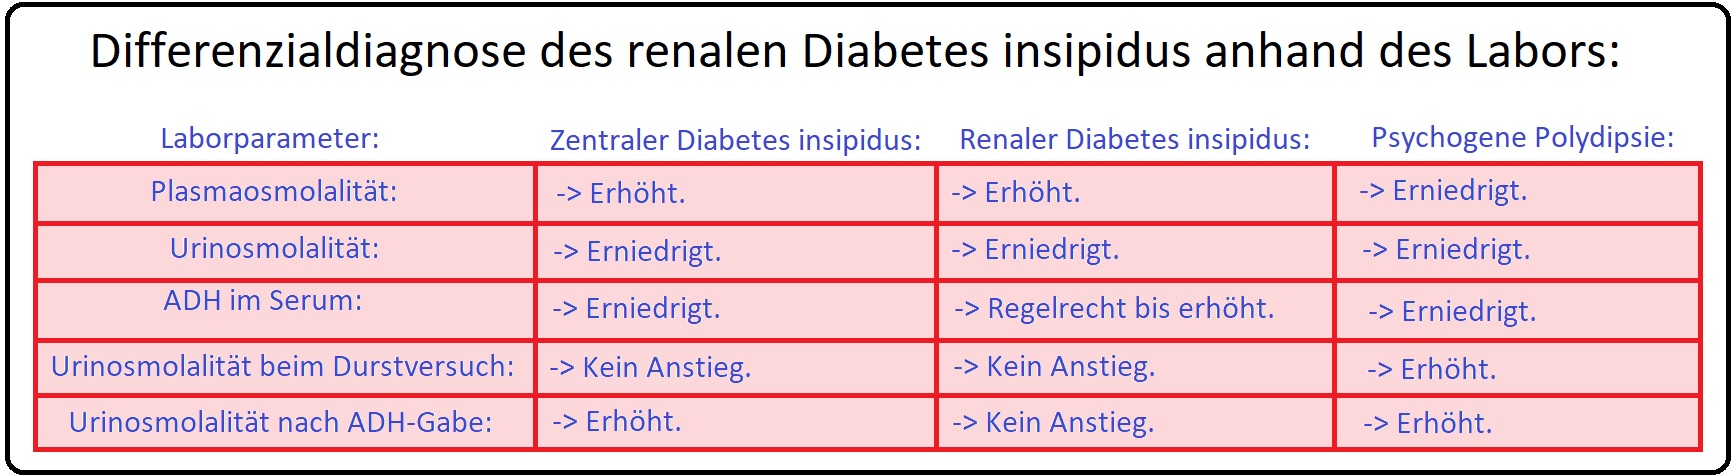 861 Differenzialdiagnose des renalen Diabetes insipidus anhand des Labors